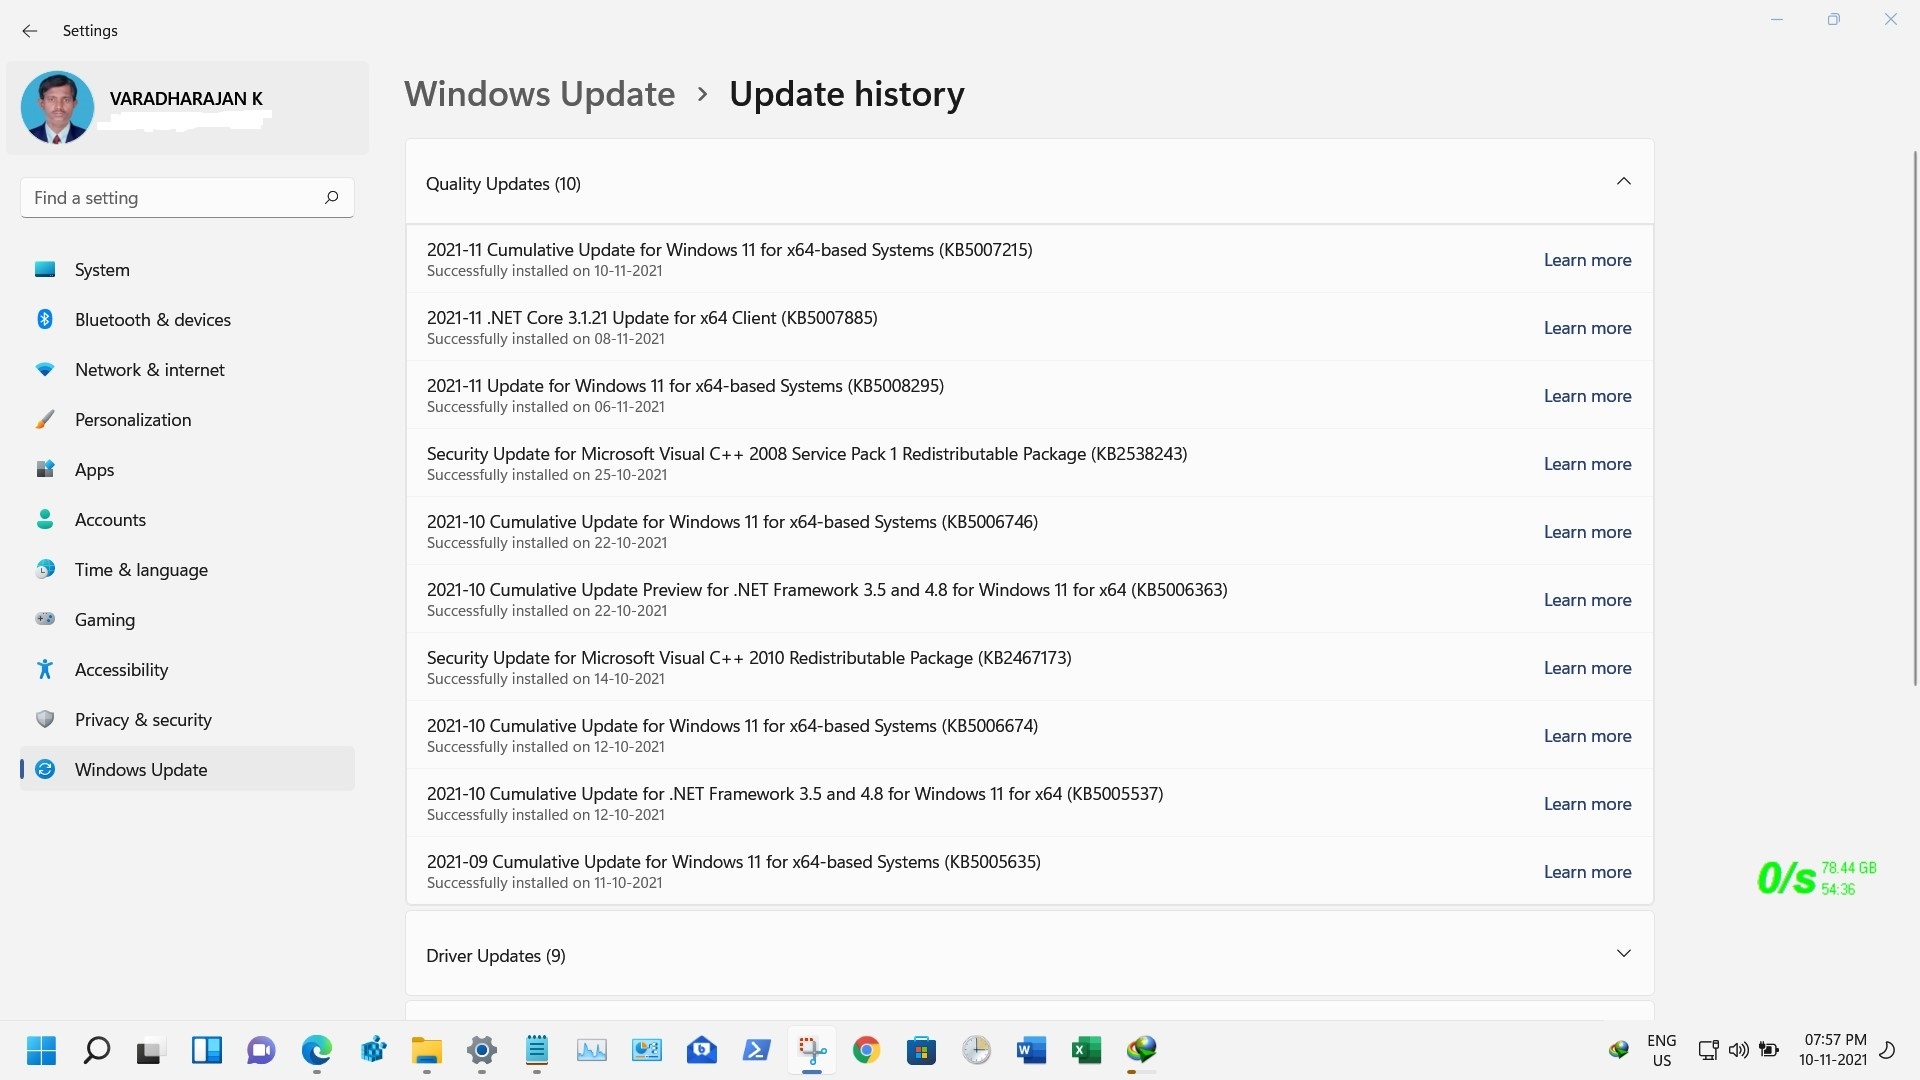 2021-11 Cumulative Update for Windows 11 for x64-based Systems KB5007215 stuck on pending... a065a2c3-cf40-4d98-ab8f-98aafc0542bc?upload=true.jpg